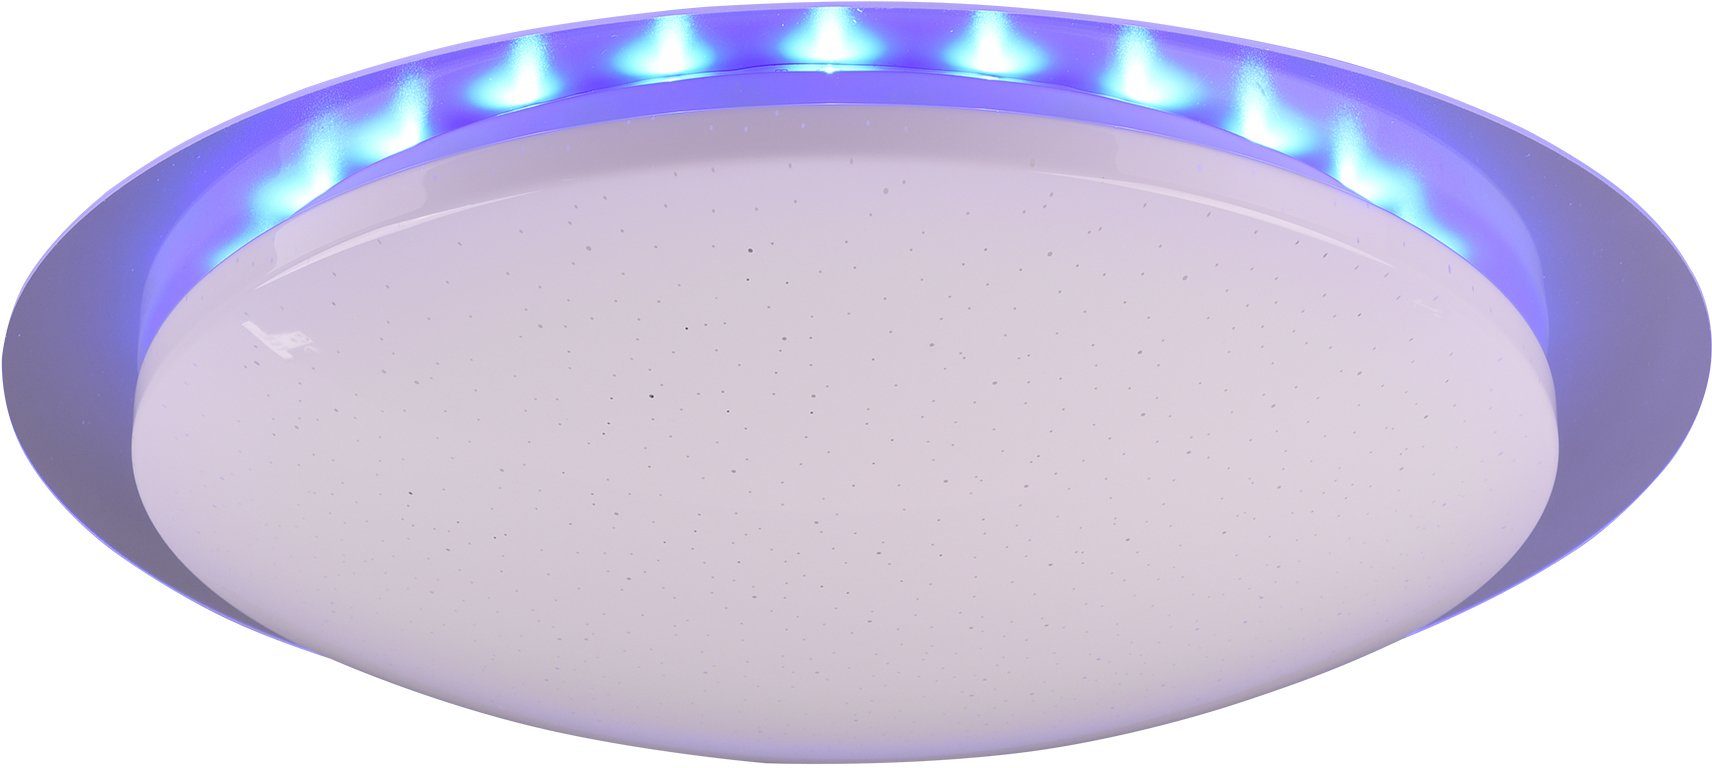 TRIO Leuchten mehrere Helligkeitsstufen, LED RGB Farbwechsler, 48 Fernbed., Ø schaltbar, inkl. LED Dimmer integriert, Joleen, Deckenleuchte Backlight, mit Starlight-Effekt, Dimmer, cm getrennt fest